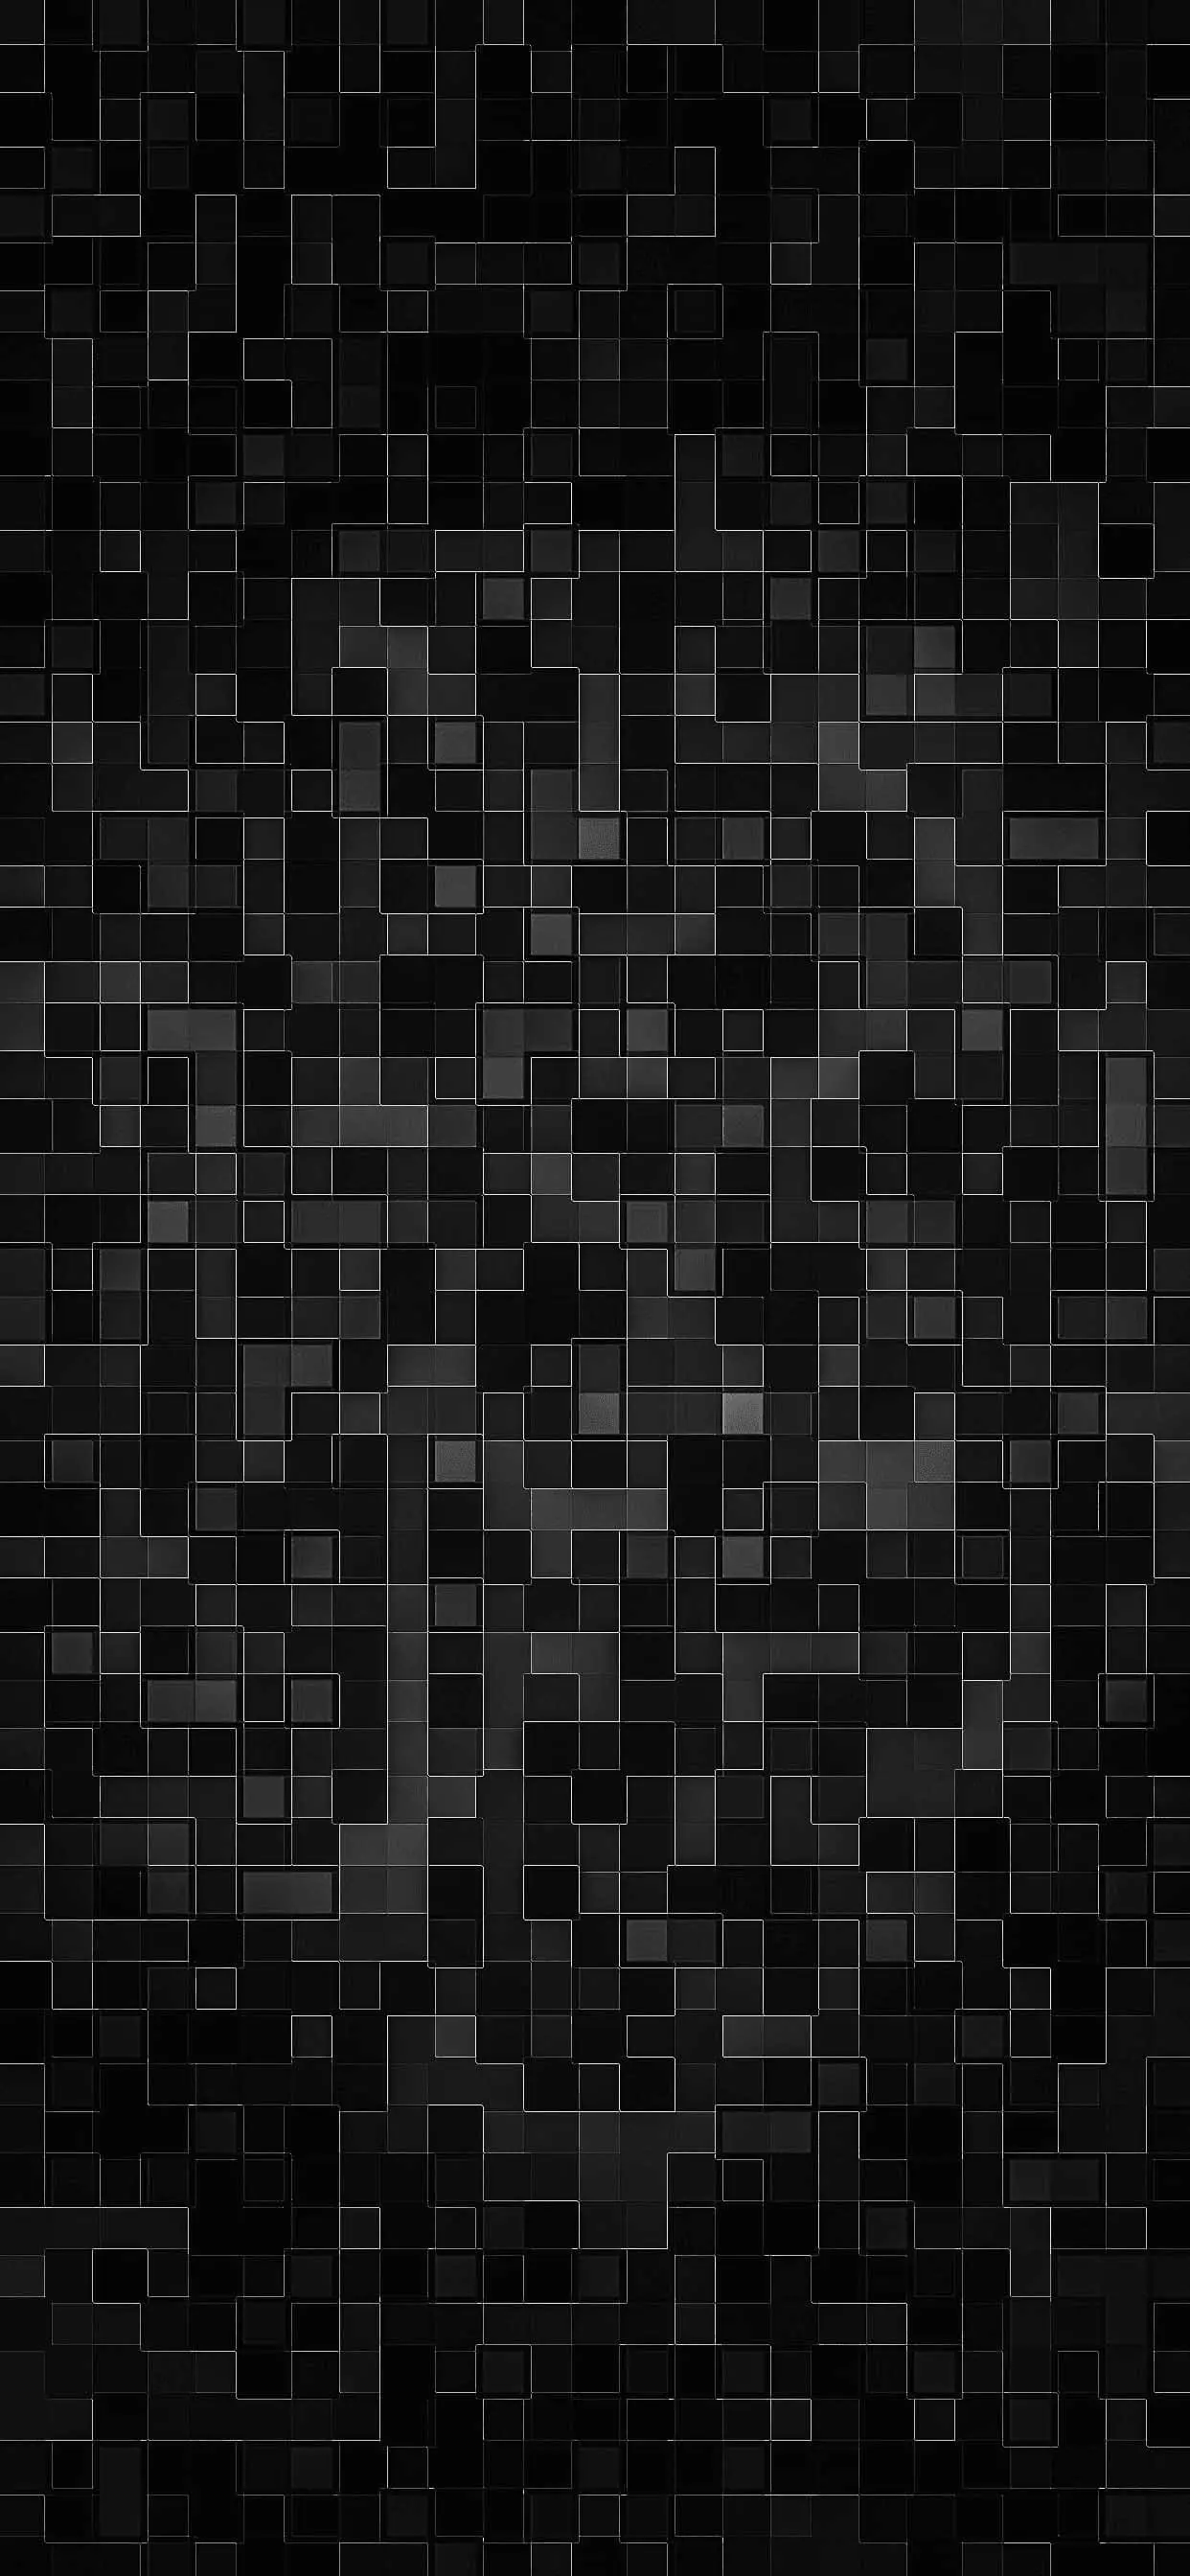 خلفية مربعات سوداء